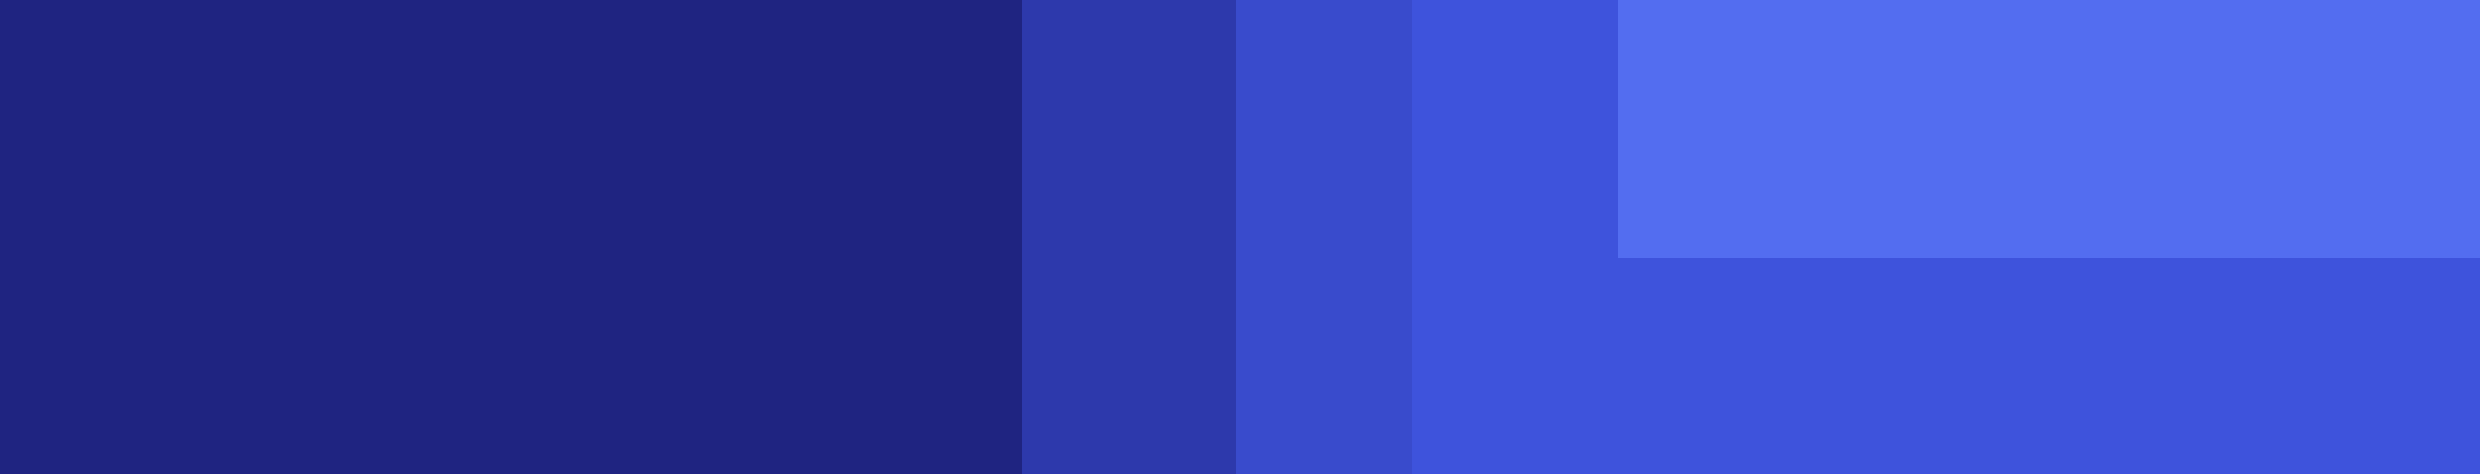 BVA blue squares visual 